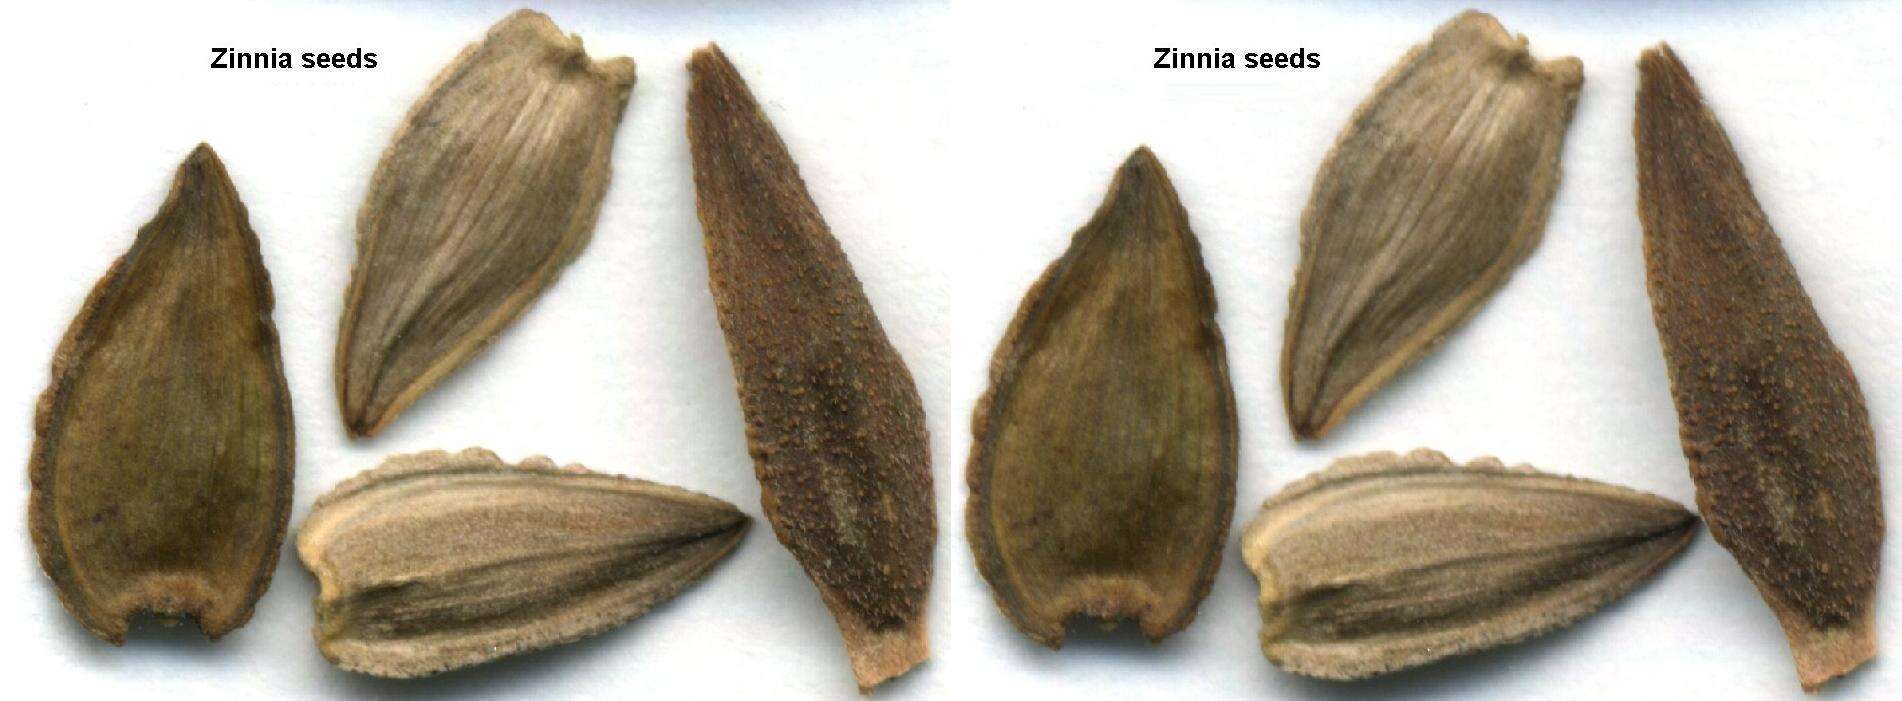 Image of zinnia